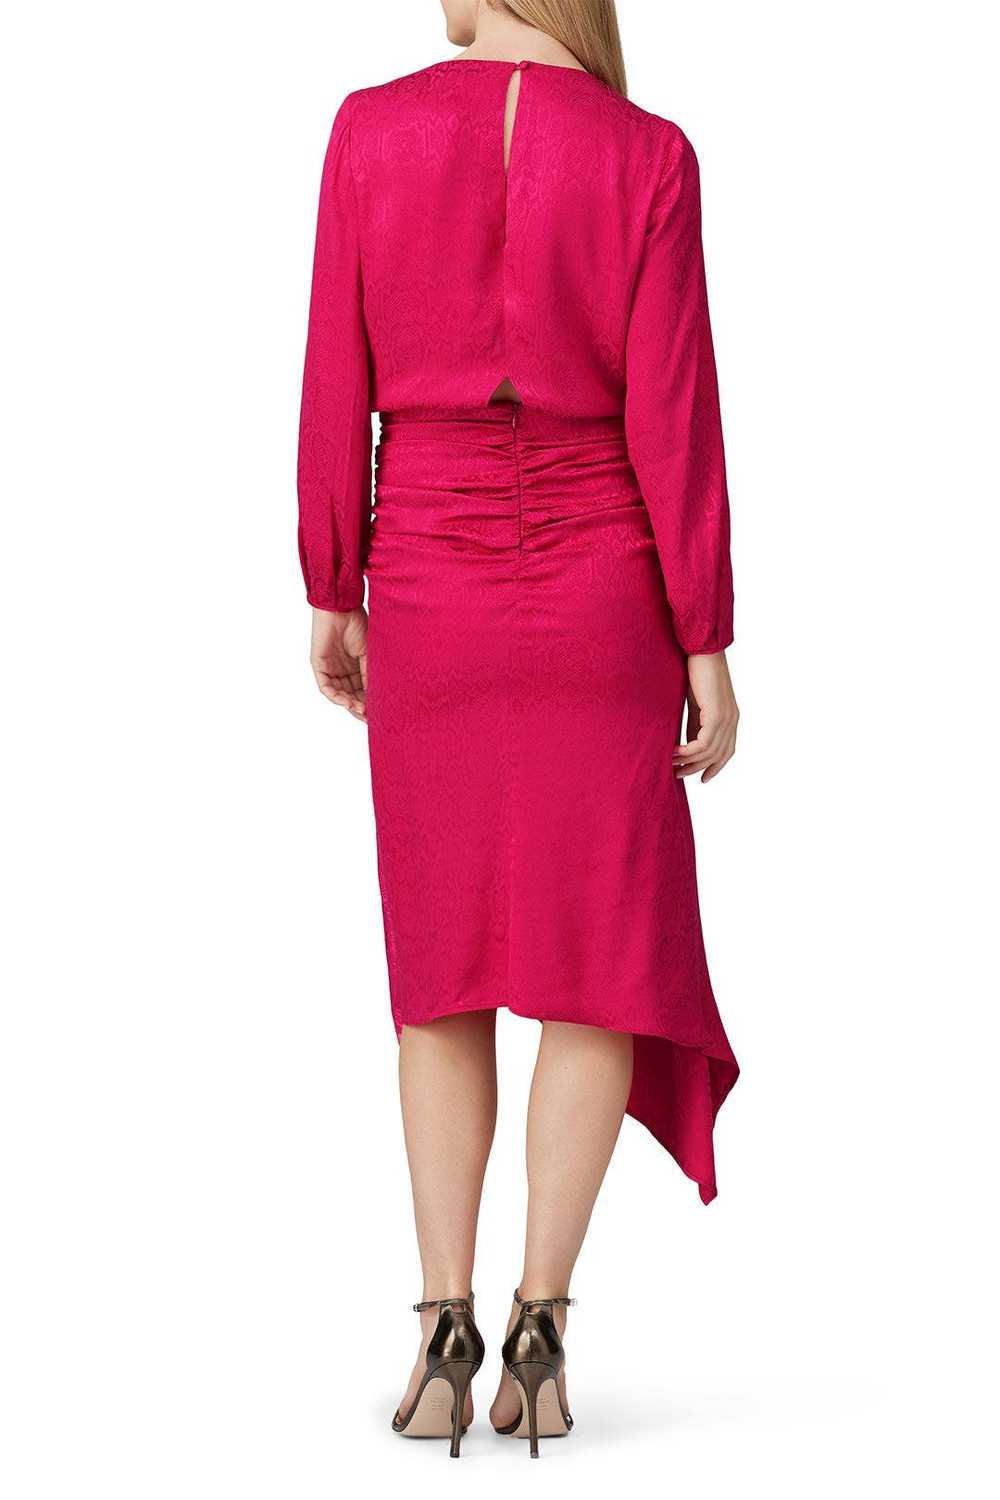 krisa Pink High Low Surplice Dress - image 3